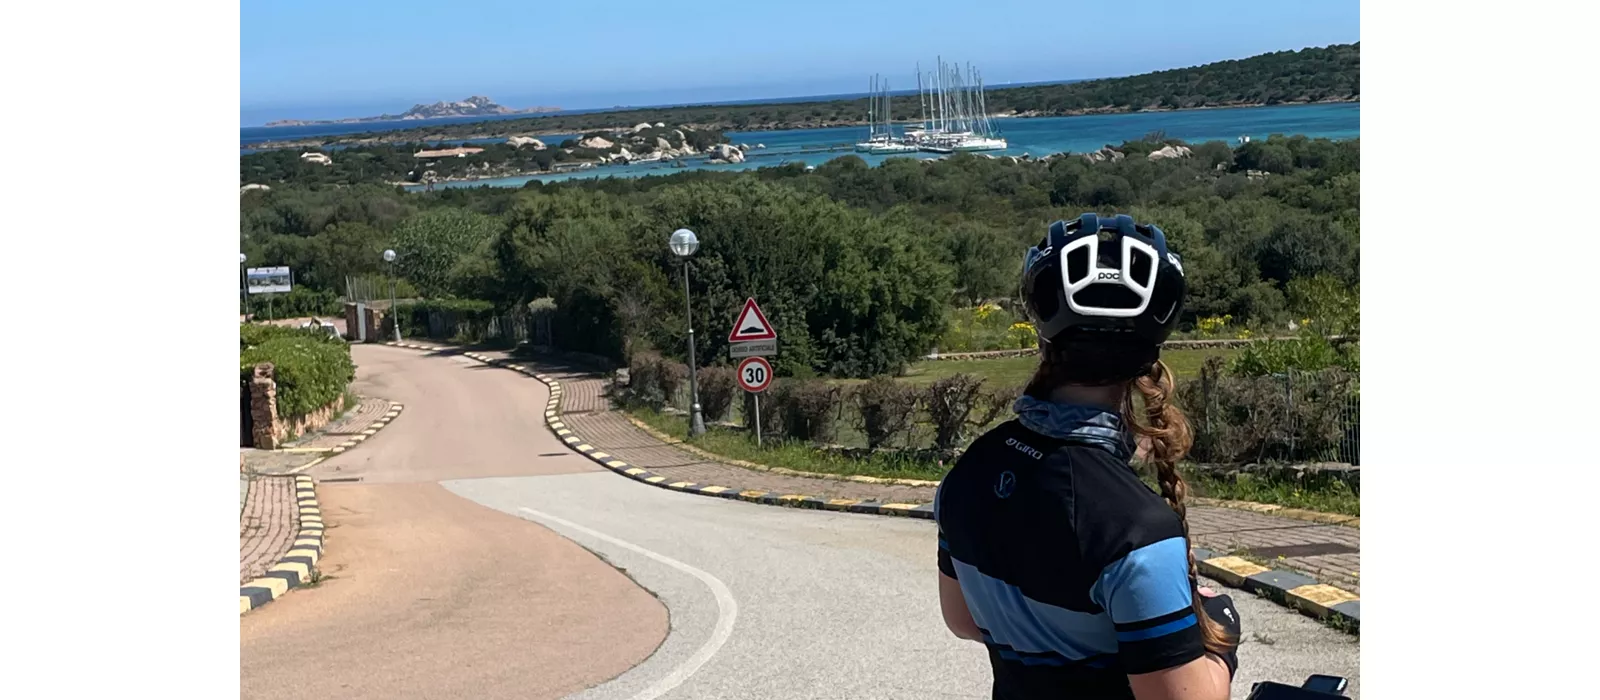 La Sardegna da sud a nord: un itinerario in bicicletta da Cagliari a Olbia